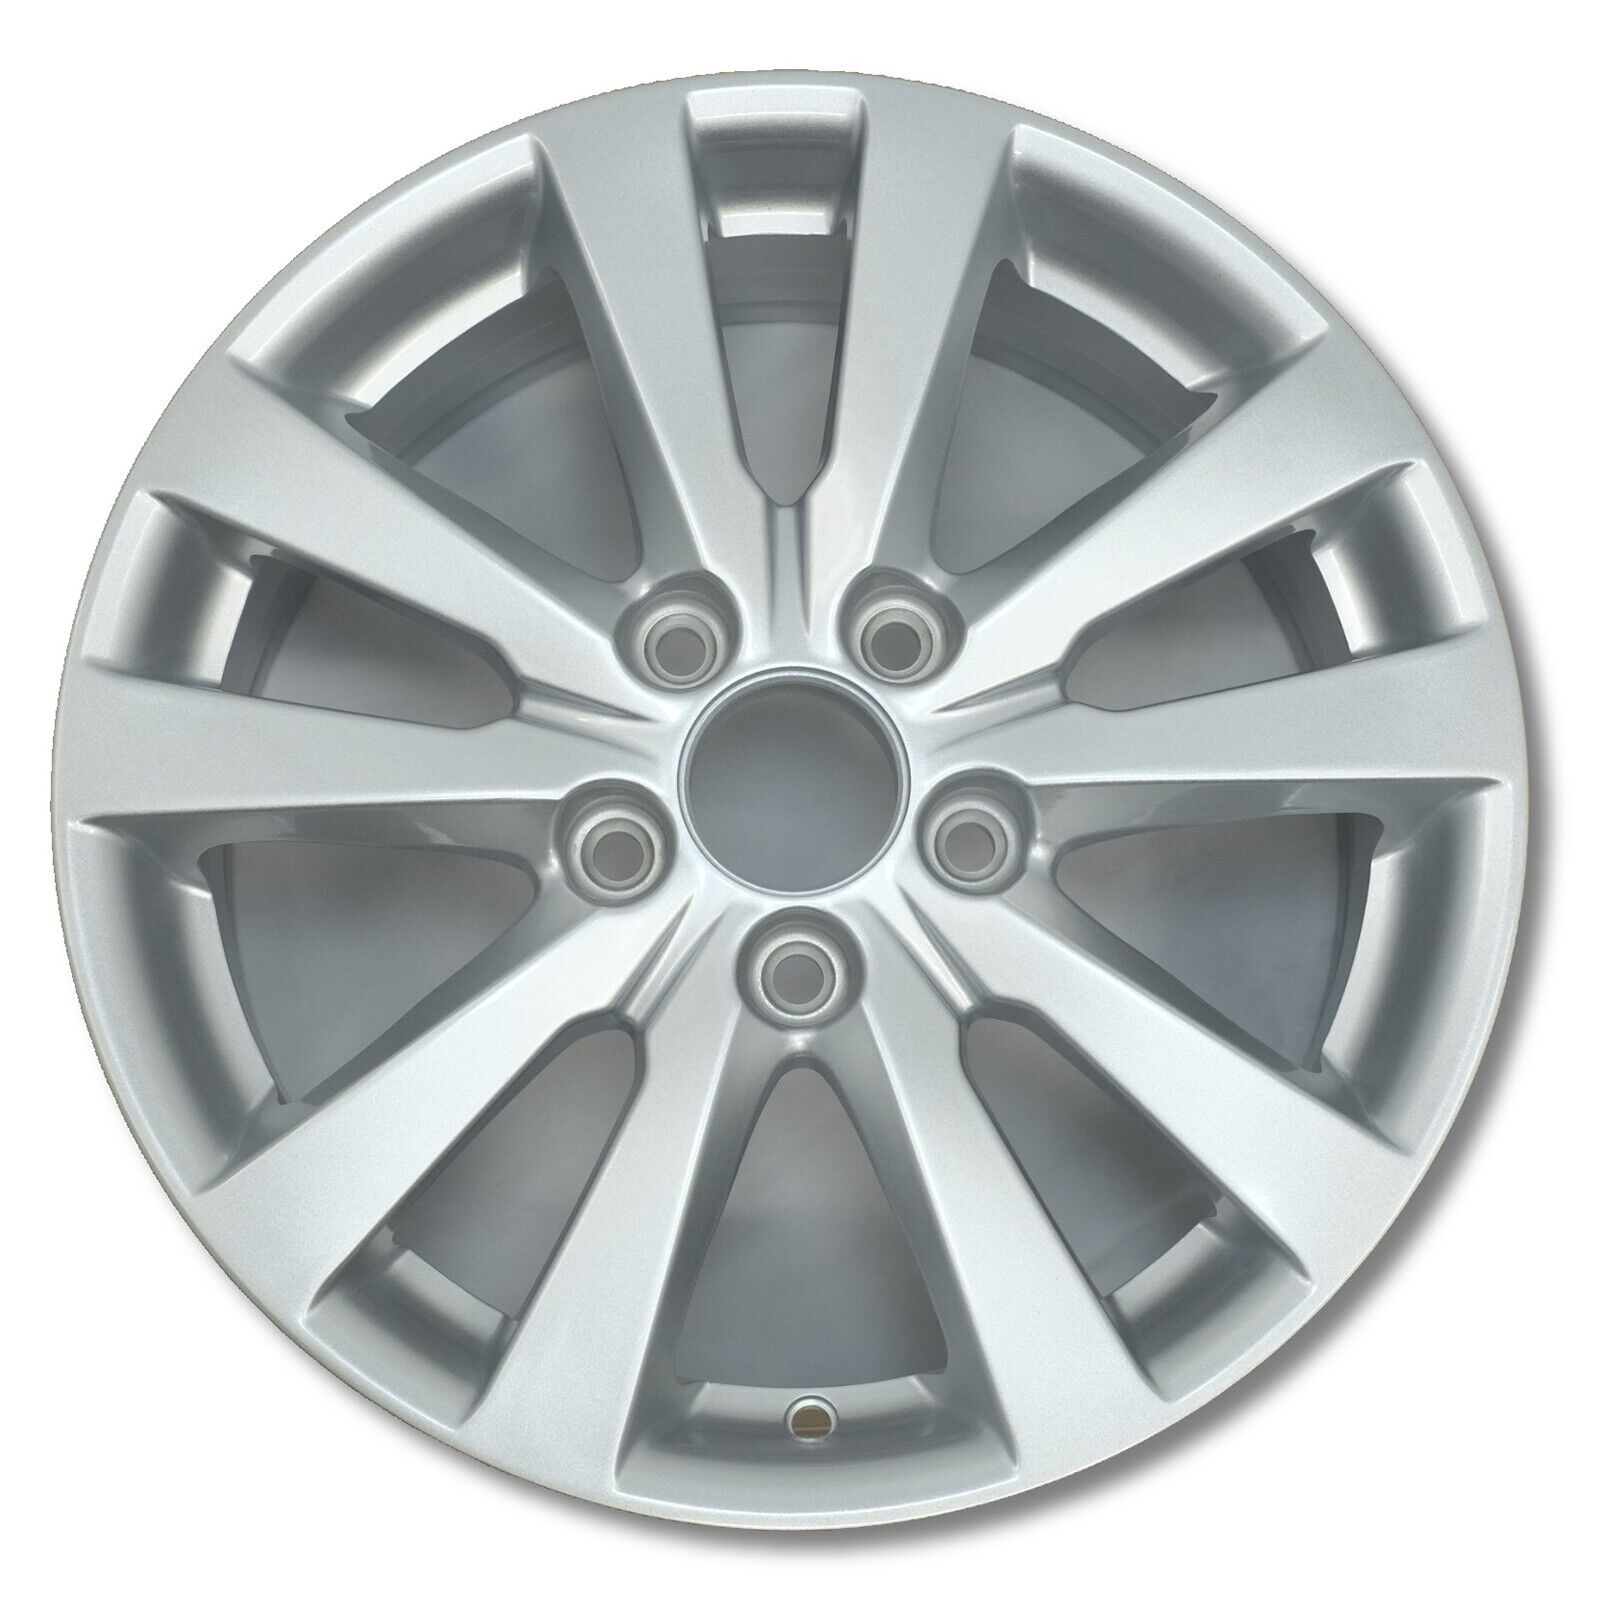 For Honda Civic OEM Design Wheel 16